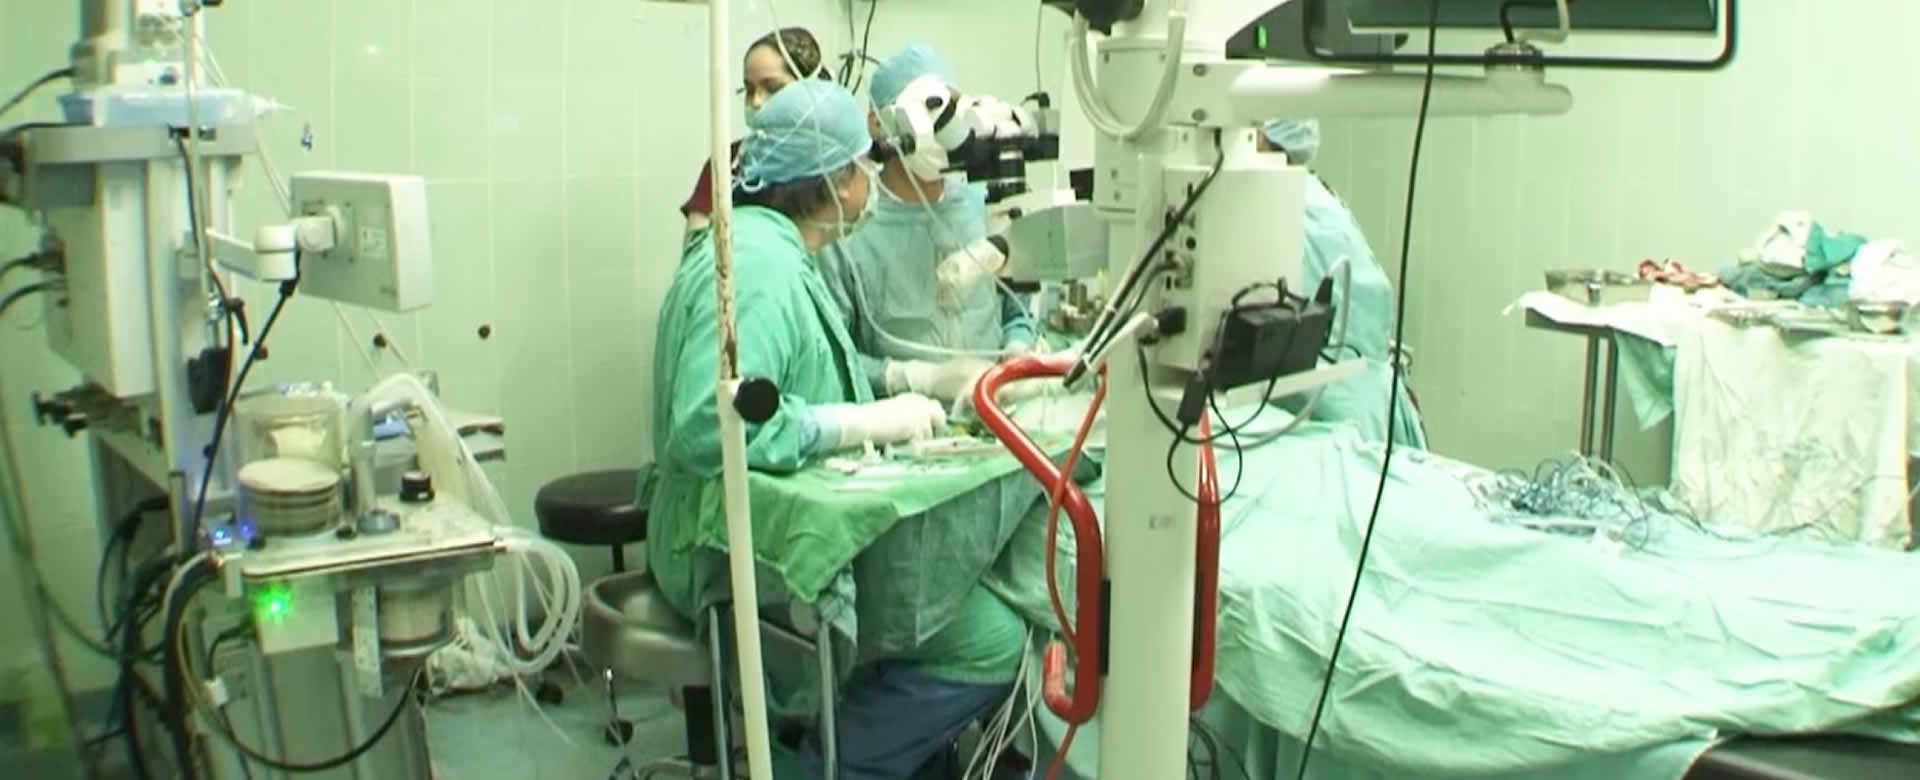 • Jornada quirúrgica y entrega de lentes en el hospital oftalmológico nacional